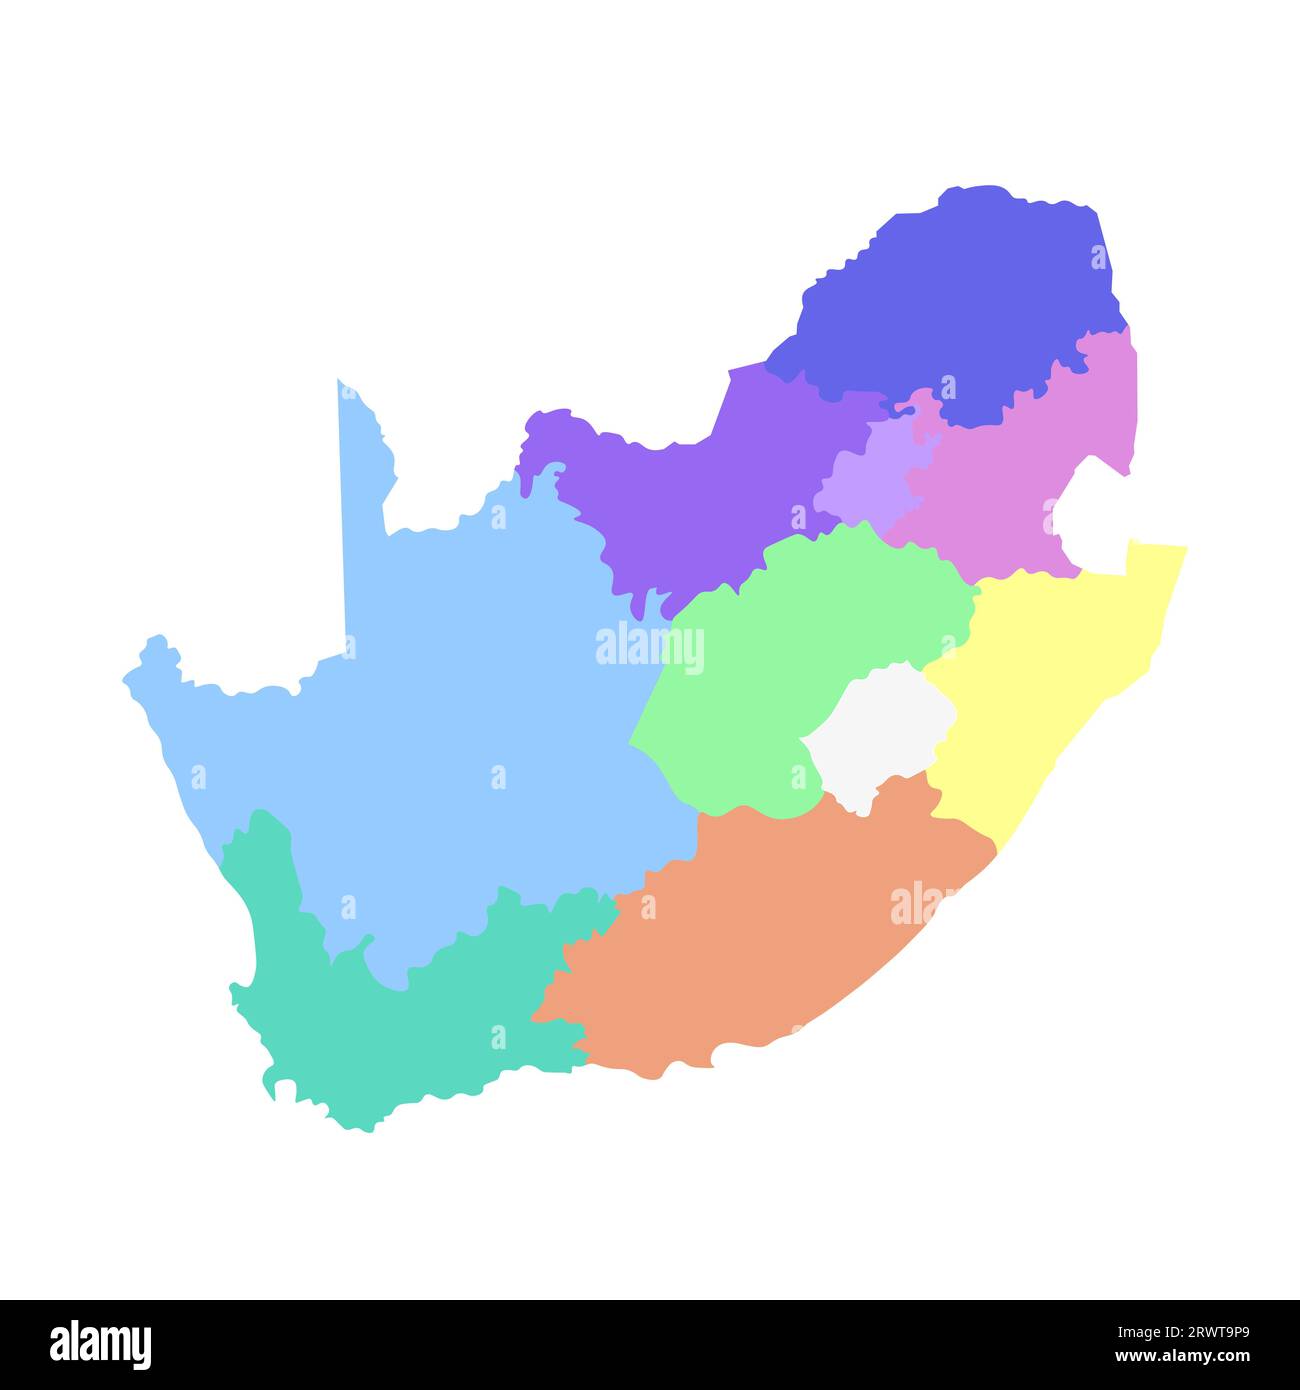 Illustrazione vettoriale isolata della mappa amministrativa semplificata del Sudafrica. Confini delle regioni. Silhouette multicolore. Illustrazione Vettoriale